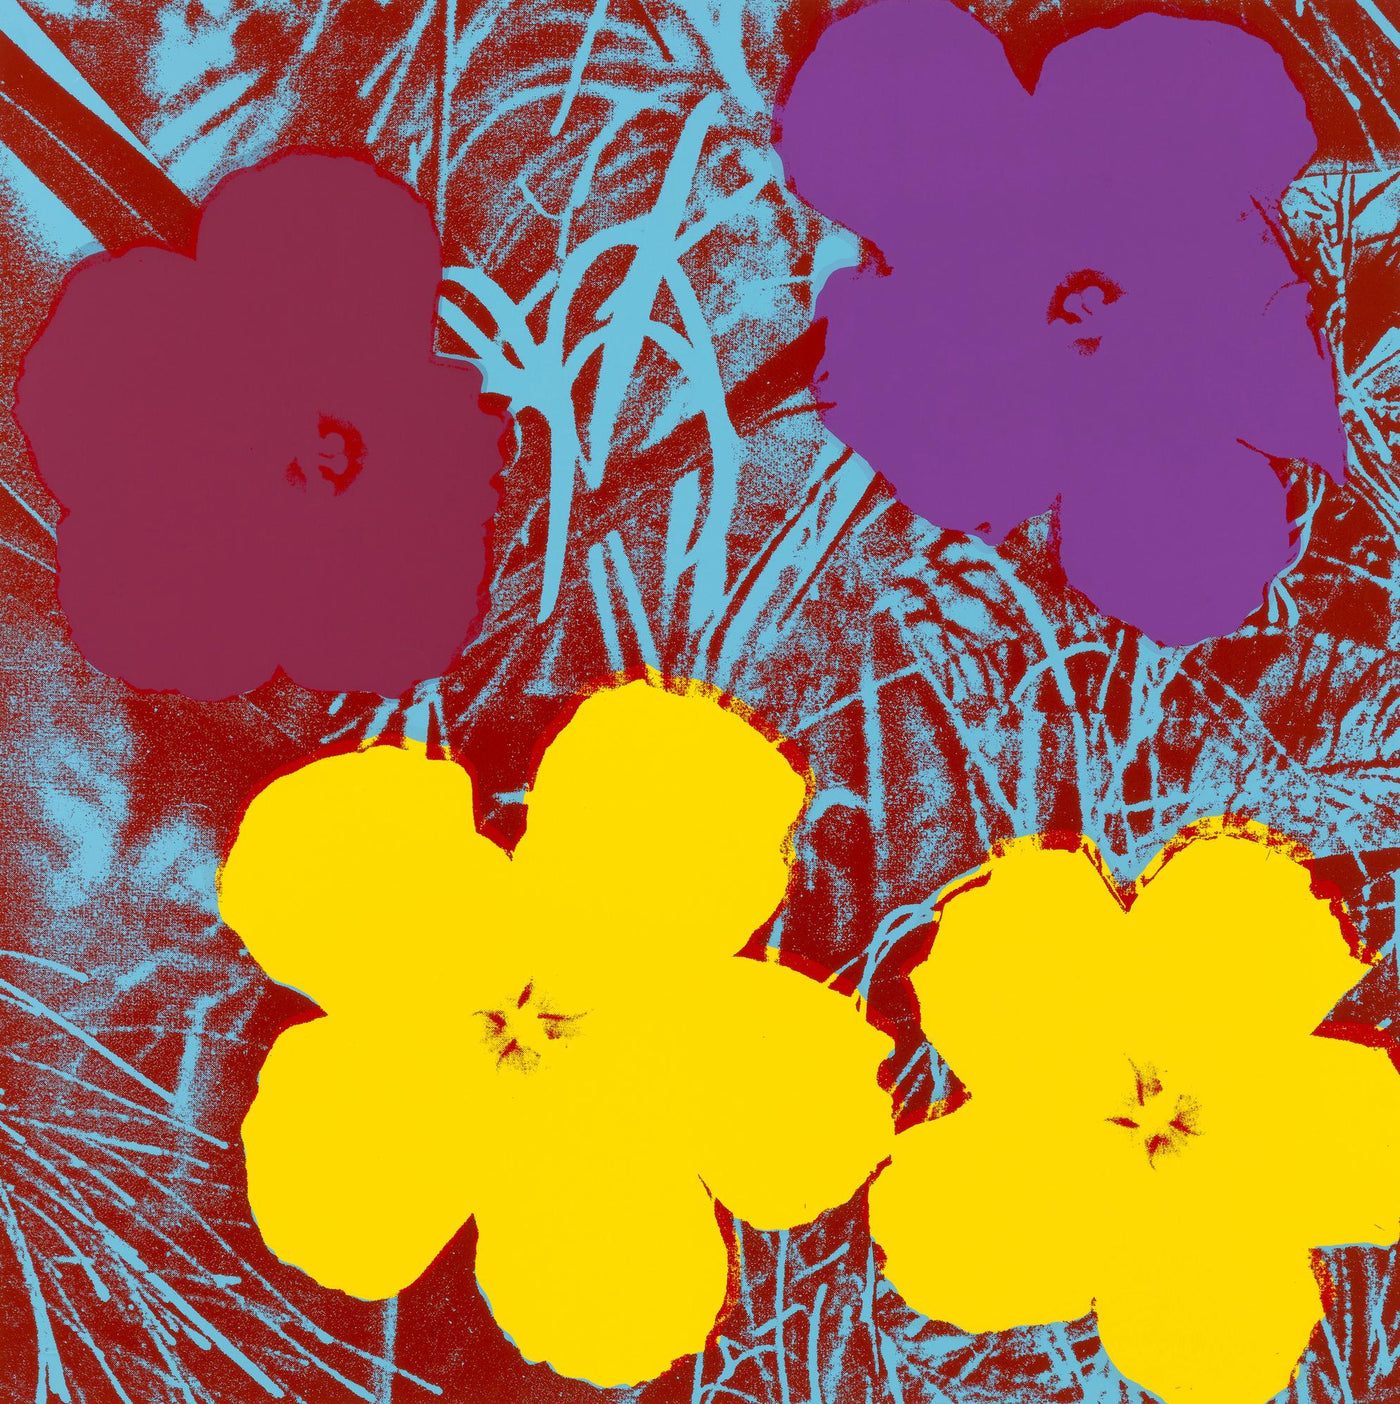 Andy Warhol Flowers (Feldman II.71) 1970